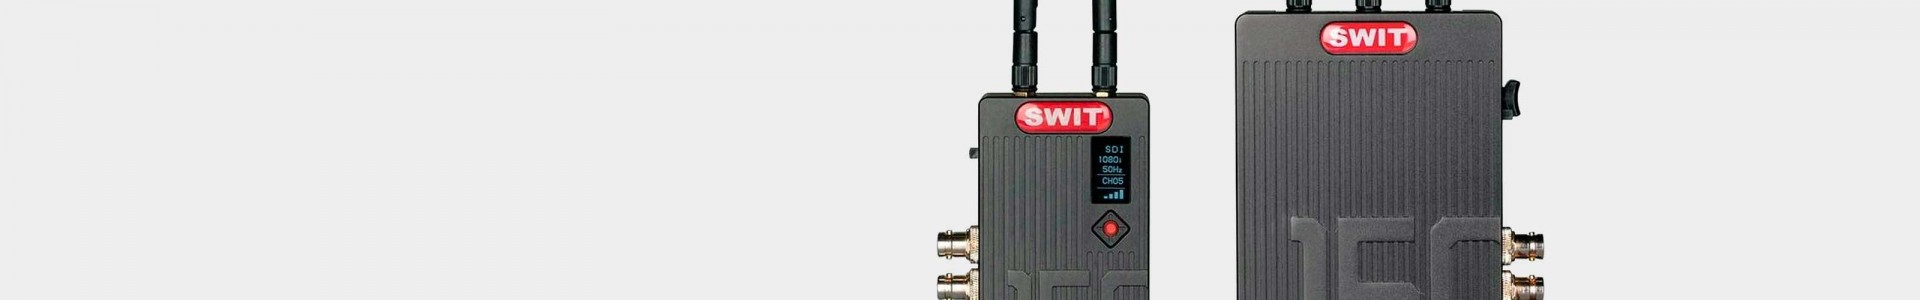 SWIT - Wireless SDI and HDMI transmitters - AVACAB